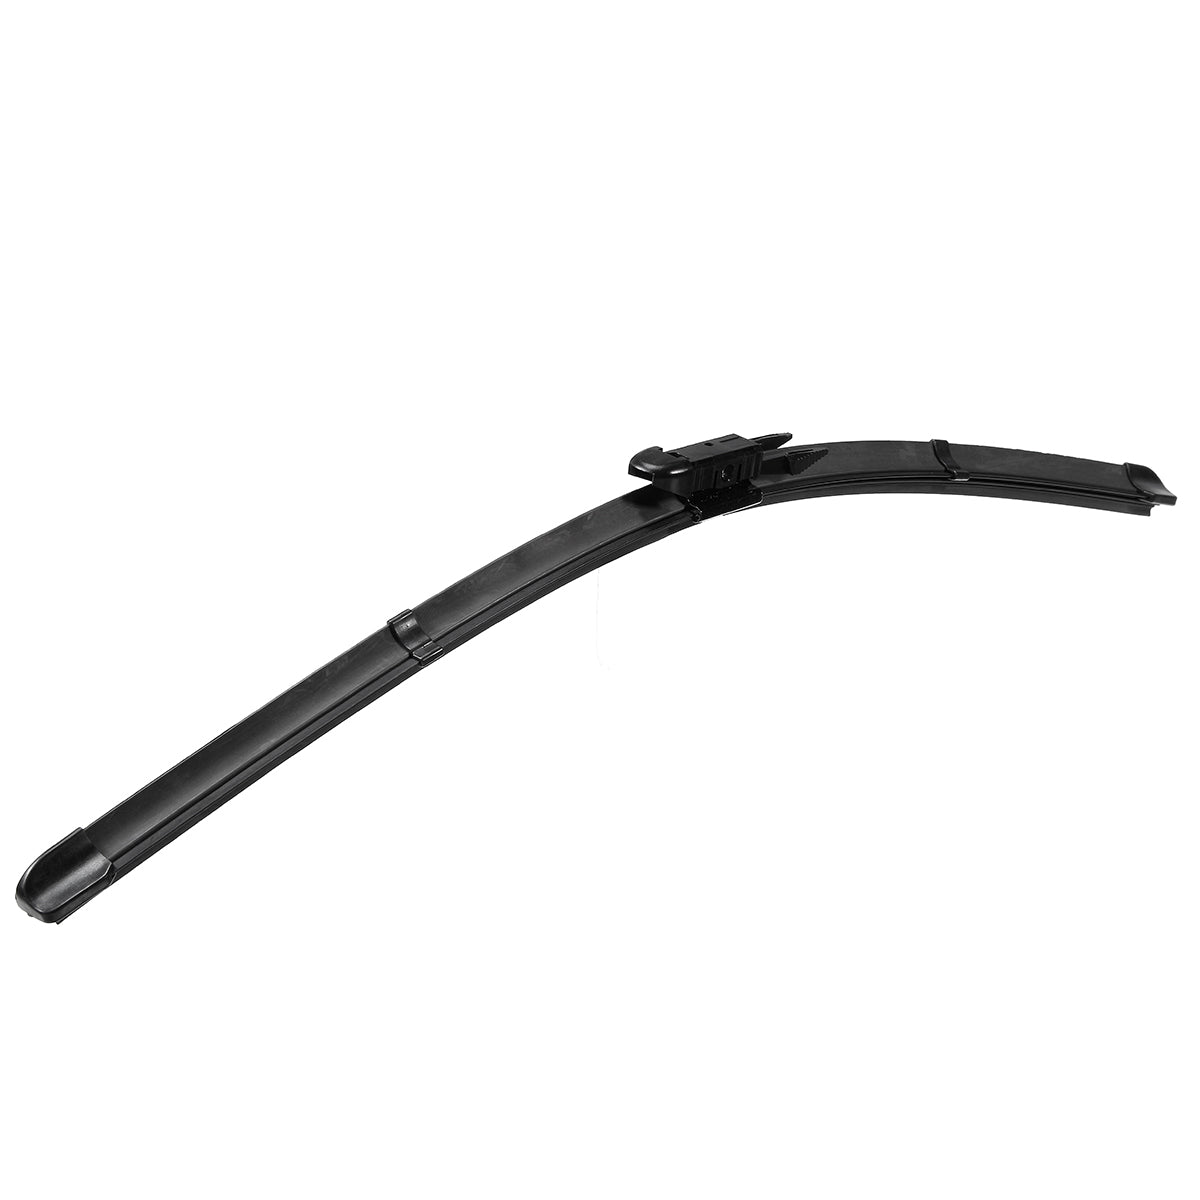 Dark Slate Gray Pair 20 Inch Front Wiper Blades For BMW 1 Series E81 E82 E87 E88 03-13